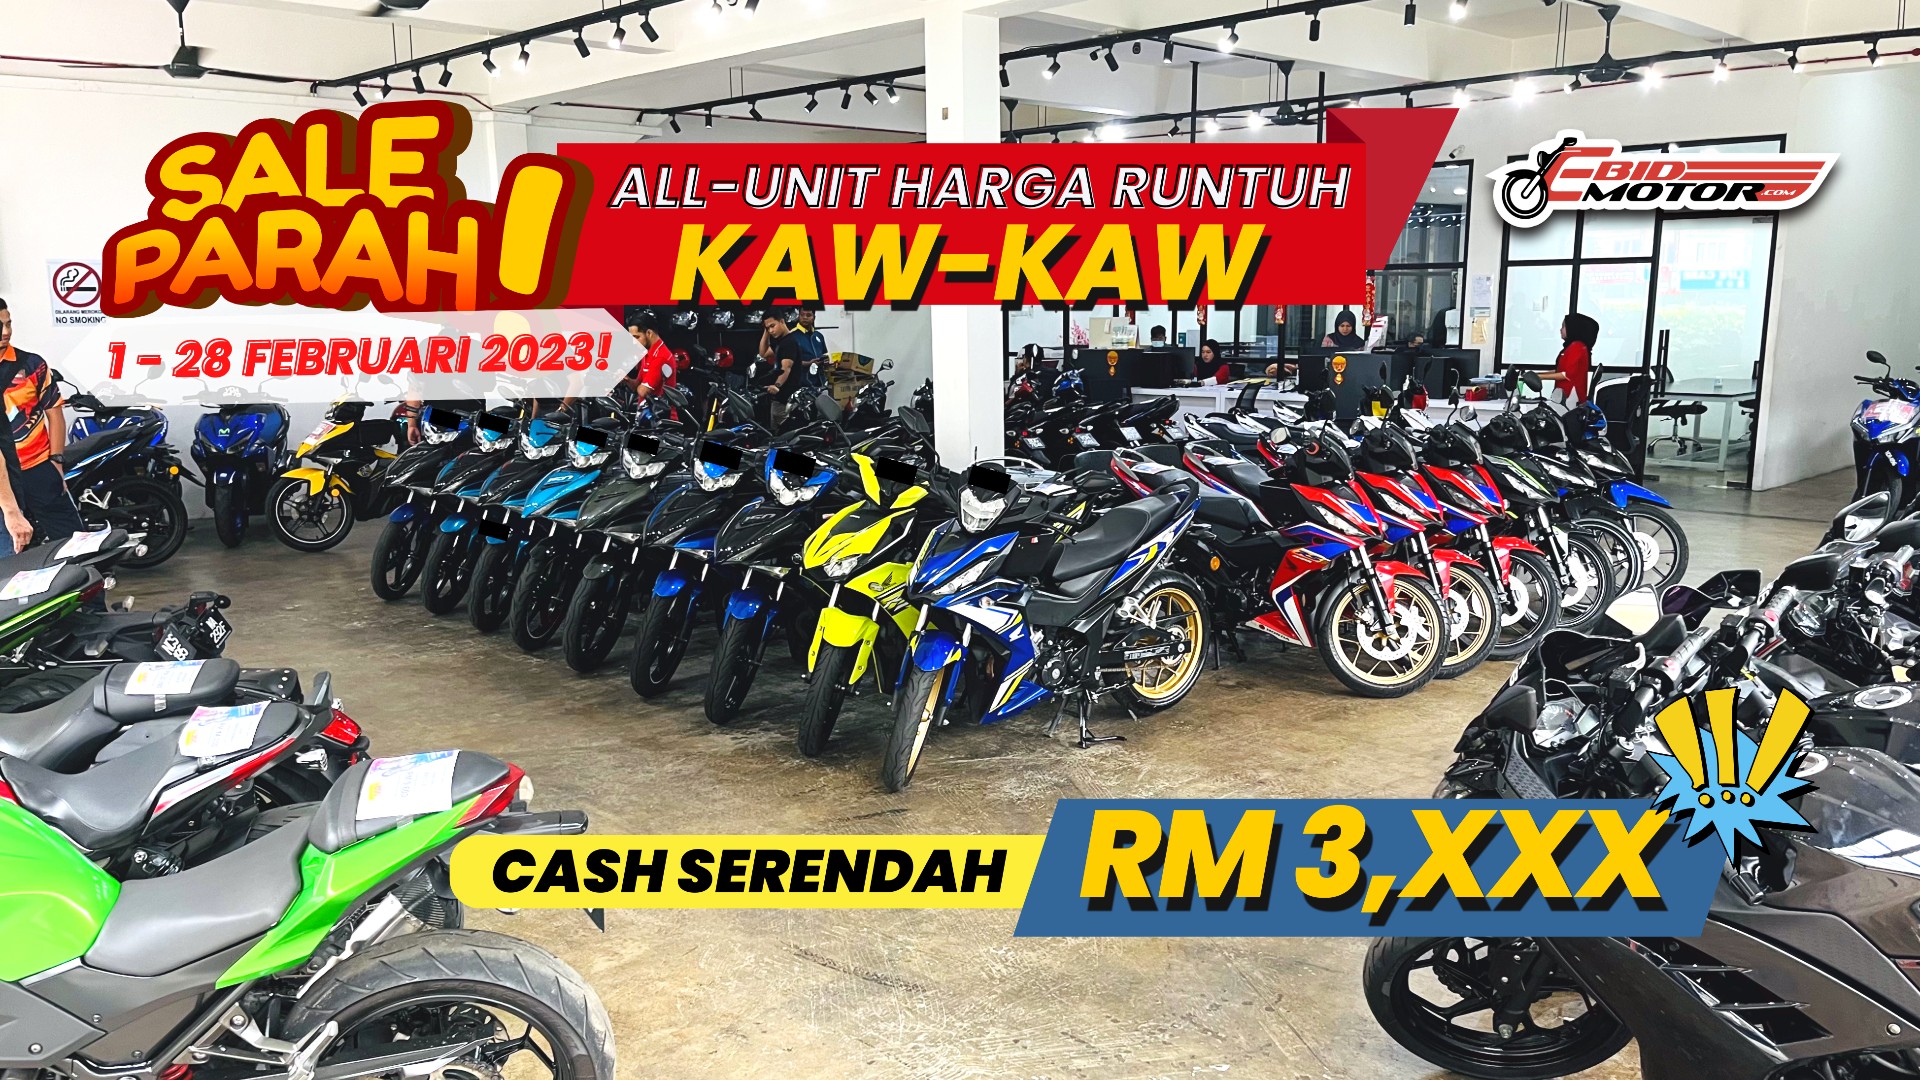 Jualan Runtuh TERKEJUT Februari 2023! Motosikal Terpakai Serendah RM3,XXX!